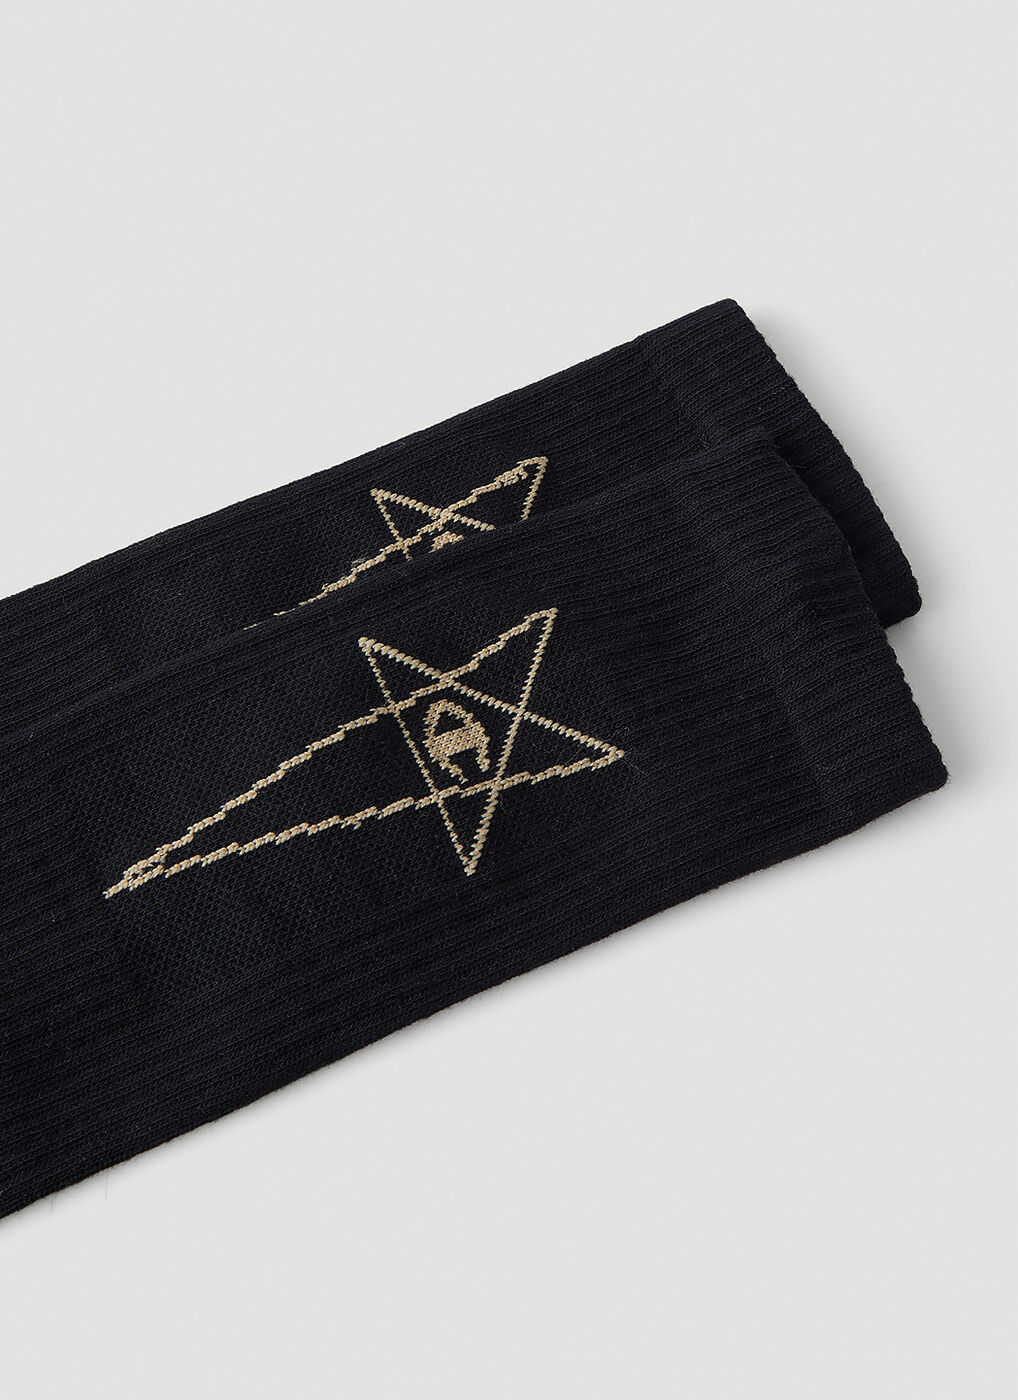 Pentagram Socks in Black